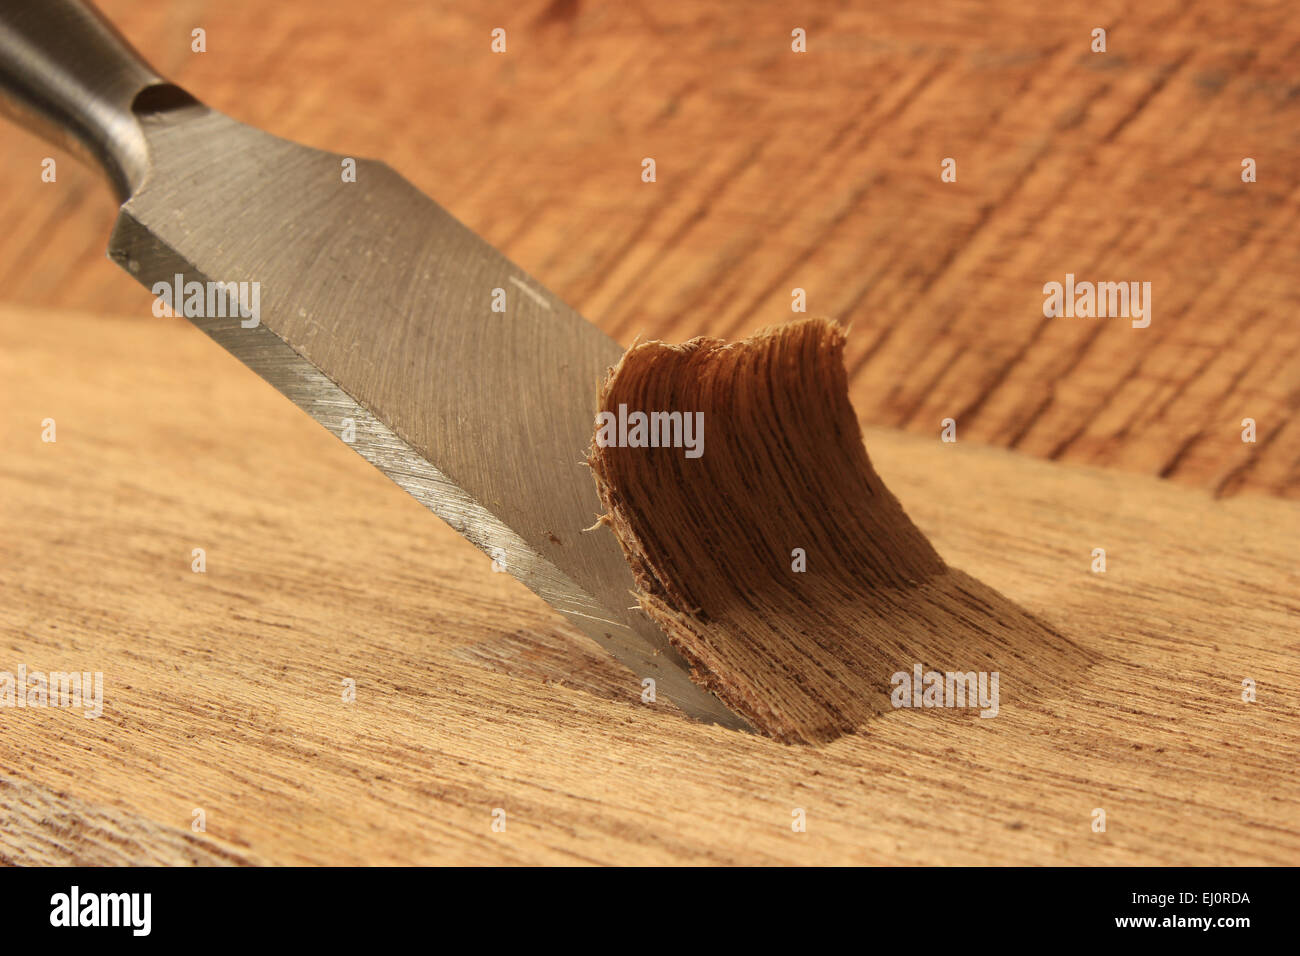 Scolpire il legno immagini e fotografie stock ad alta risoluzione - Alamy